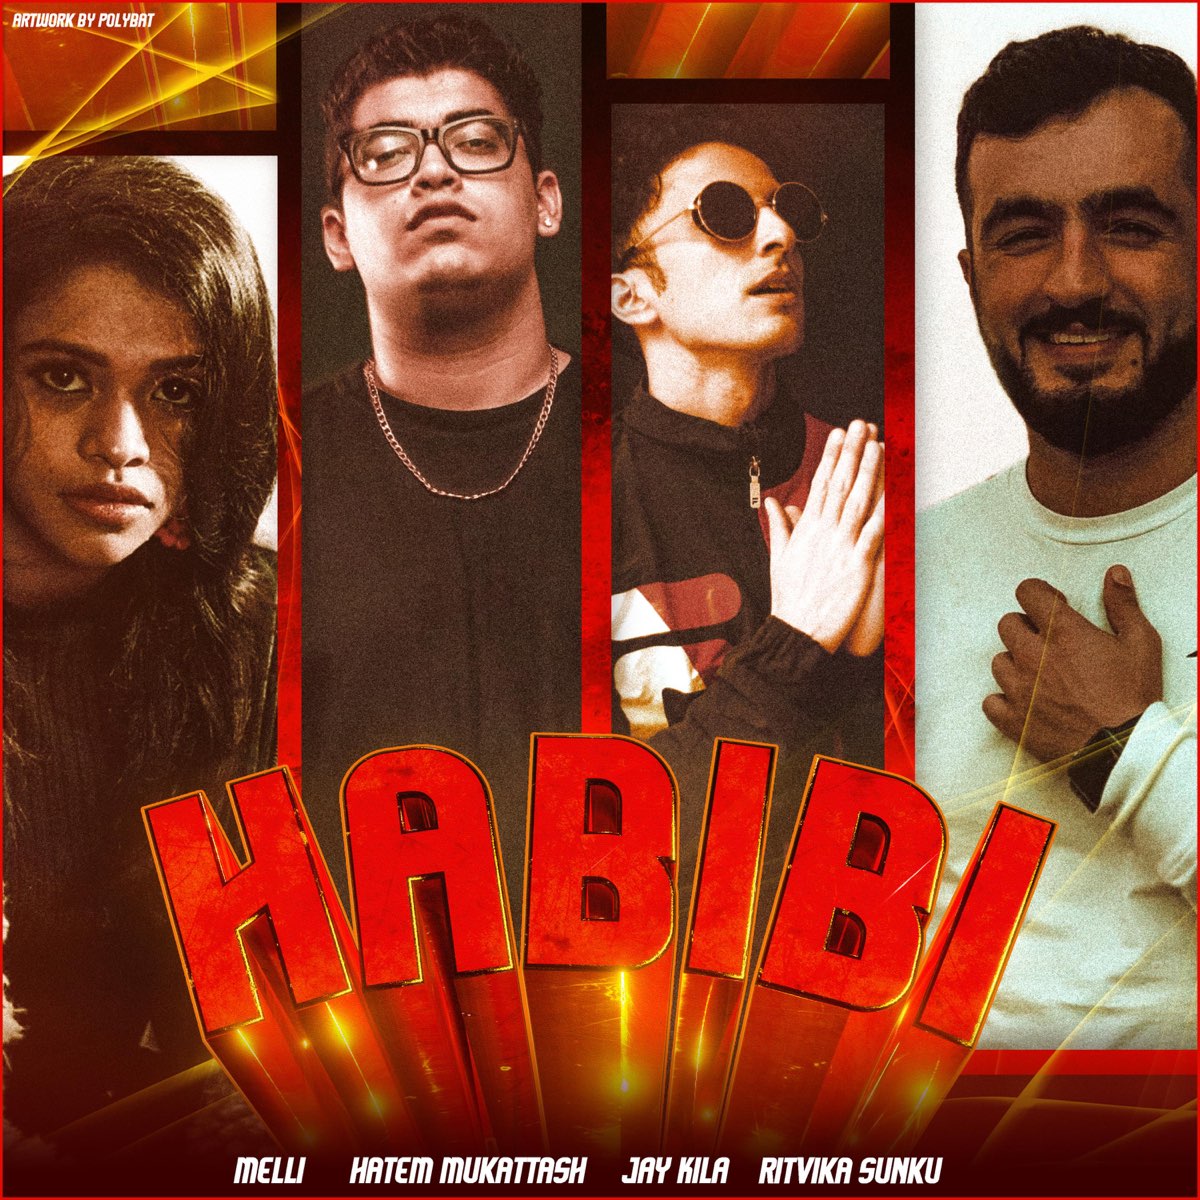 Habibi feat